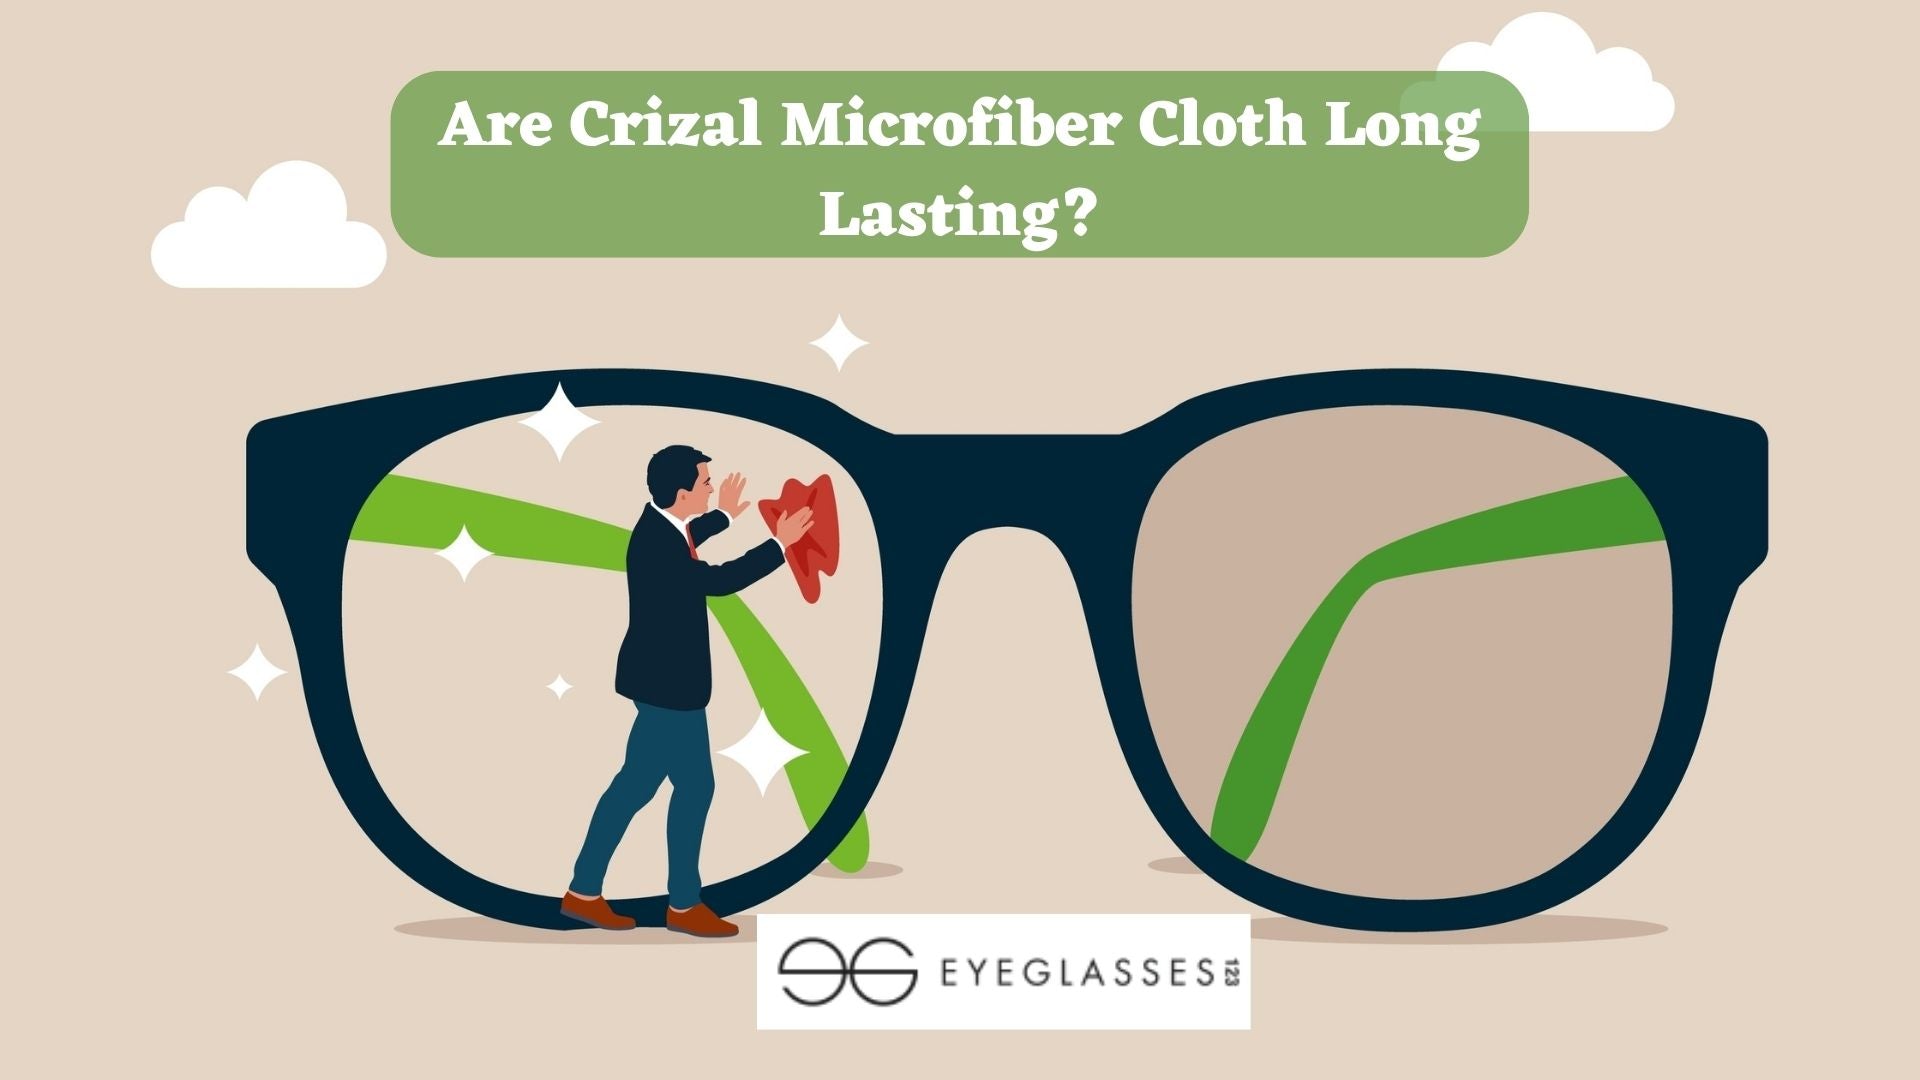 Are Crizal Microfiber Cloth Long Lasting?